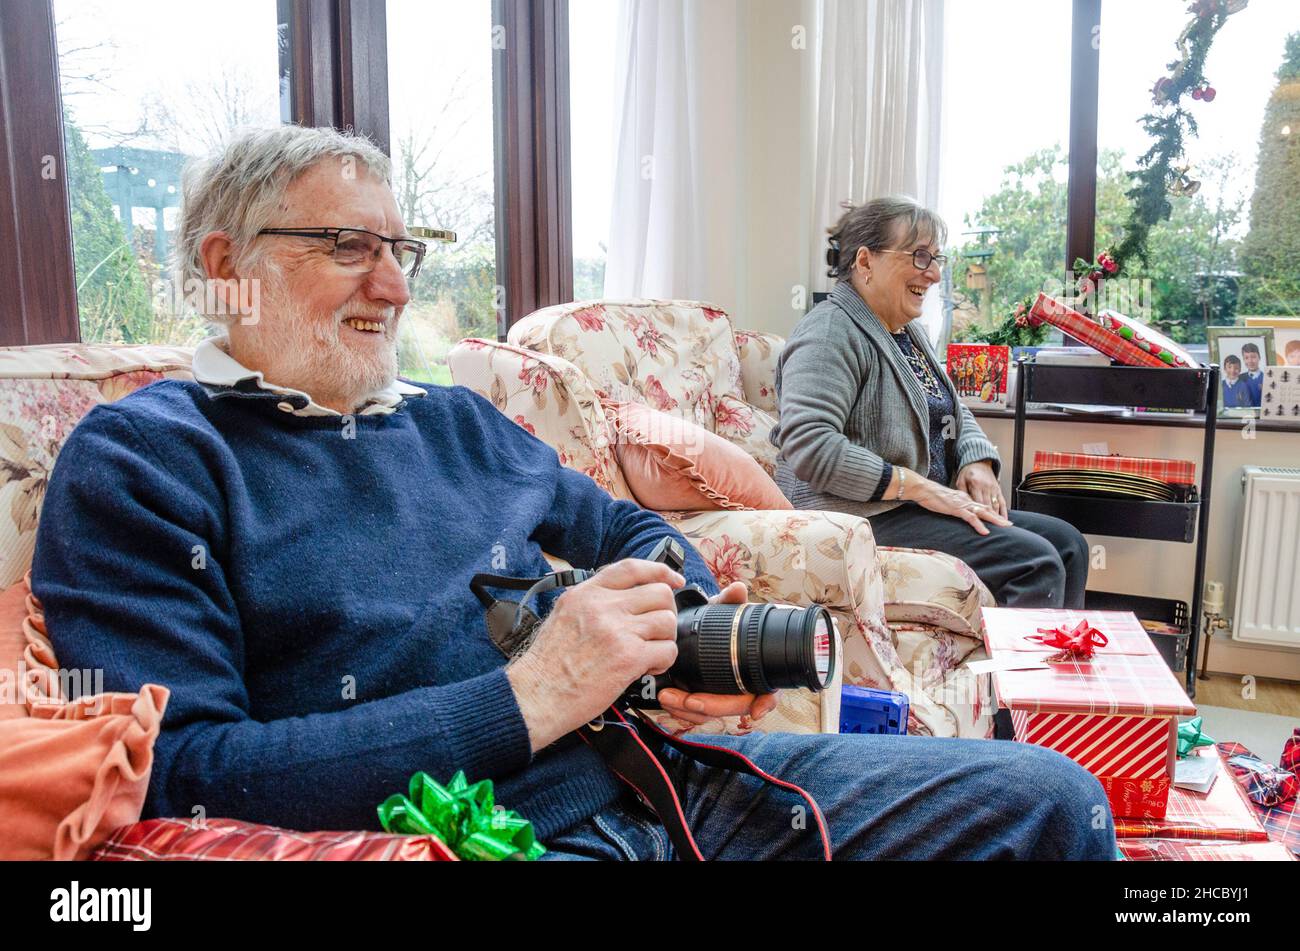 Ein Rentnerpaar sitzt am Weihnachtsmorgen in Sesseln mit Geschenken zum Öffnen, aber schaut glücklich zu, wie die Familie unsere von geschossenen offenen Geschenken zuerst schaut. Stockfoto